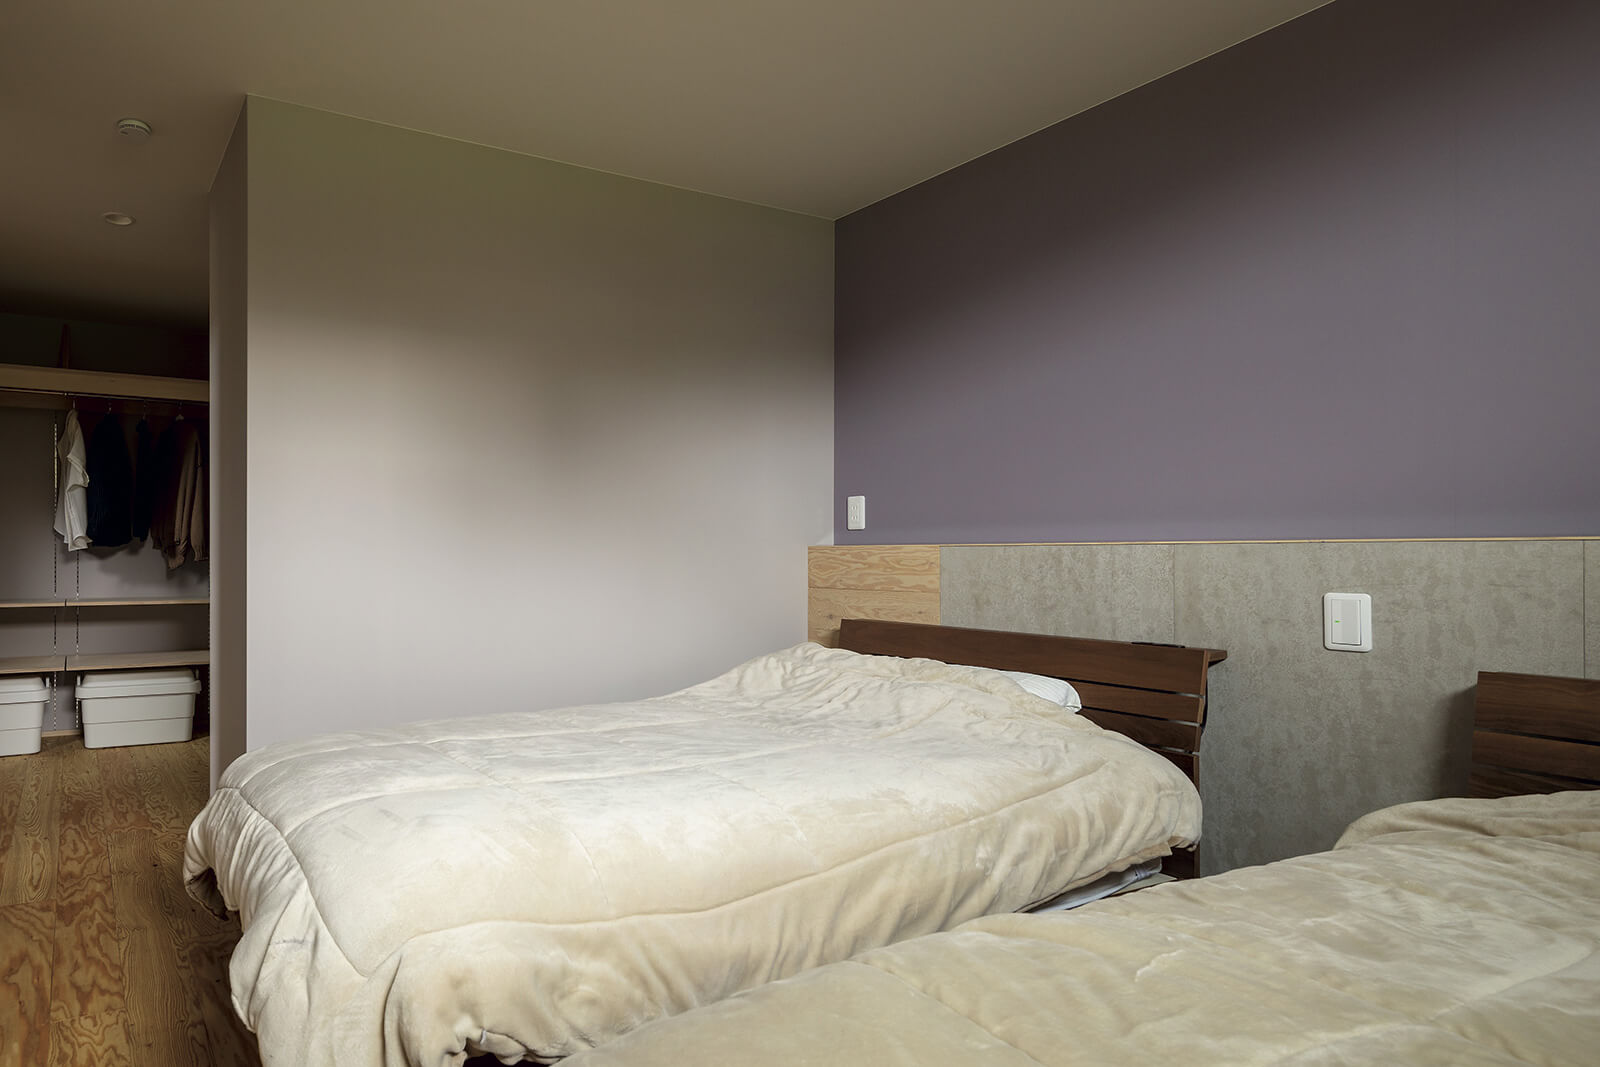 大容量のウォークインクローゼットを備えた寝室。淡い紫のアクセントウォールが、シンプルな空間にやわらかな表情を与える